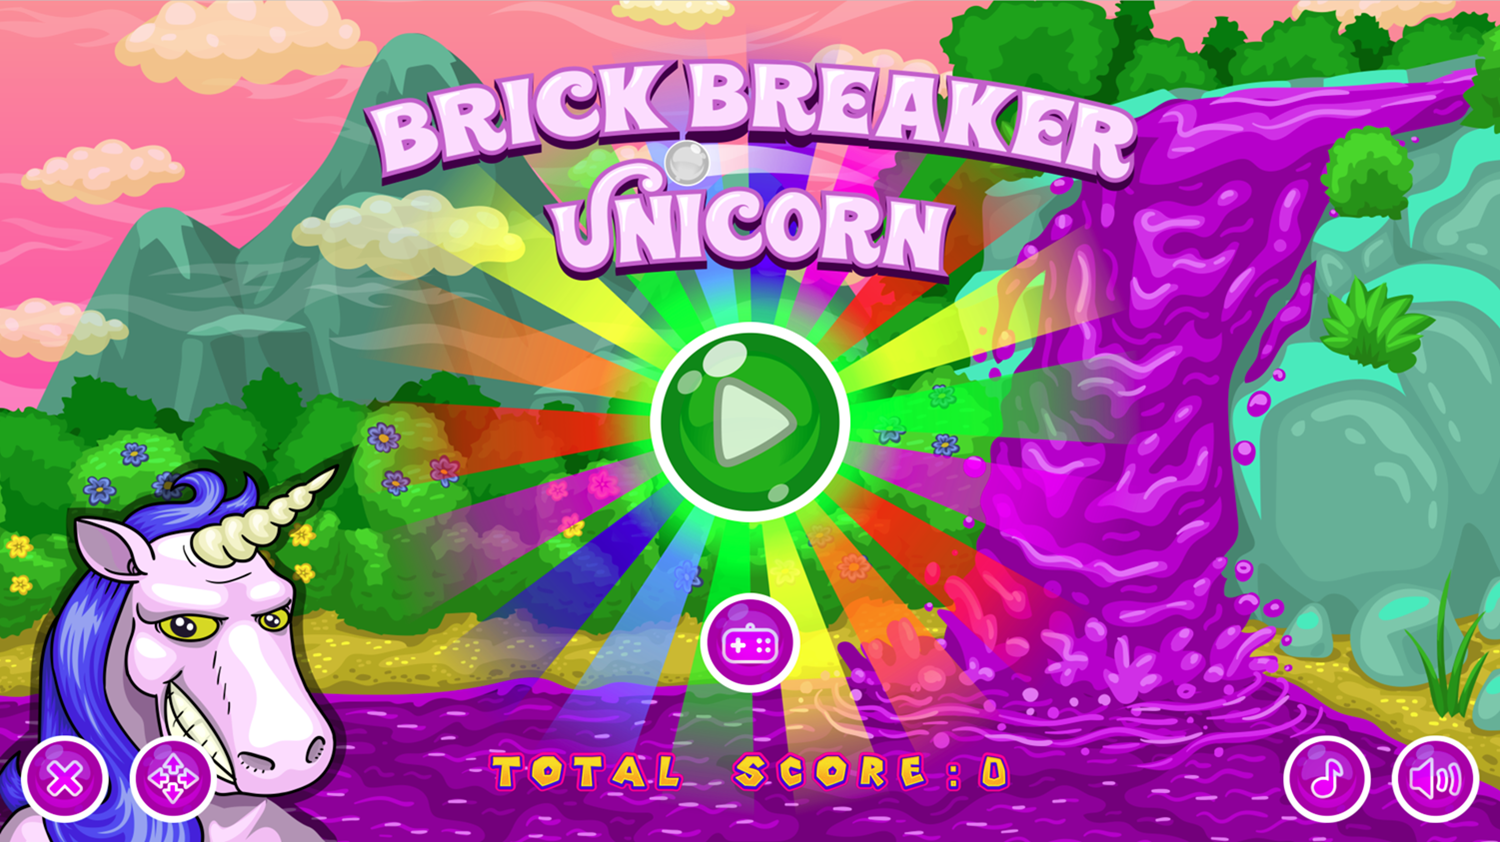 Brick Breaker Unicorn Game Welcome Screen Screenshot.